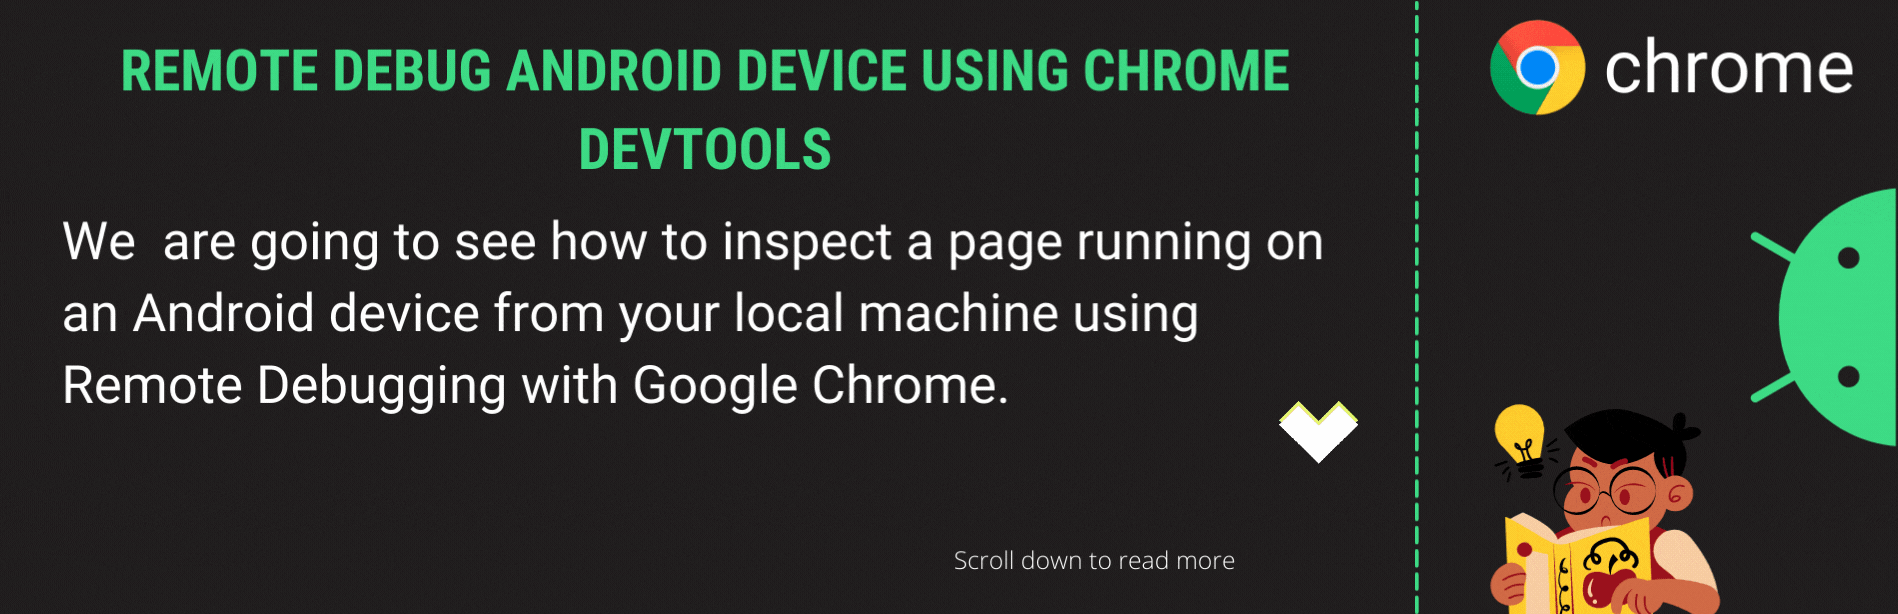 Depuracion remota de dispositivos Android mediante Chrome DevTools Por